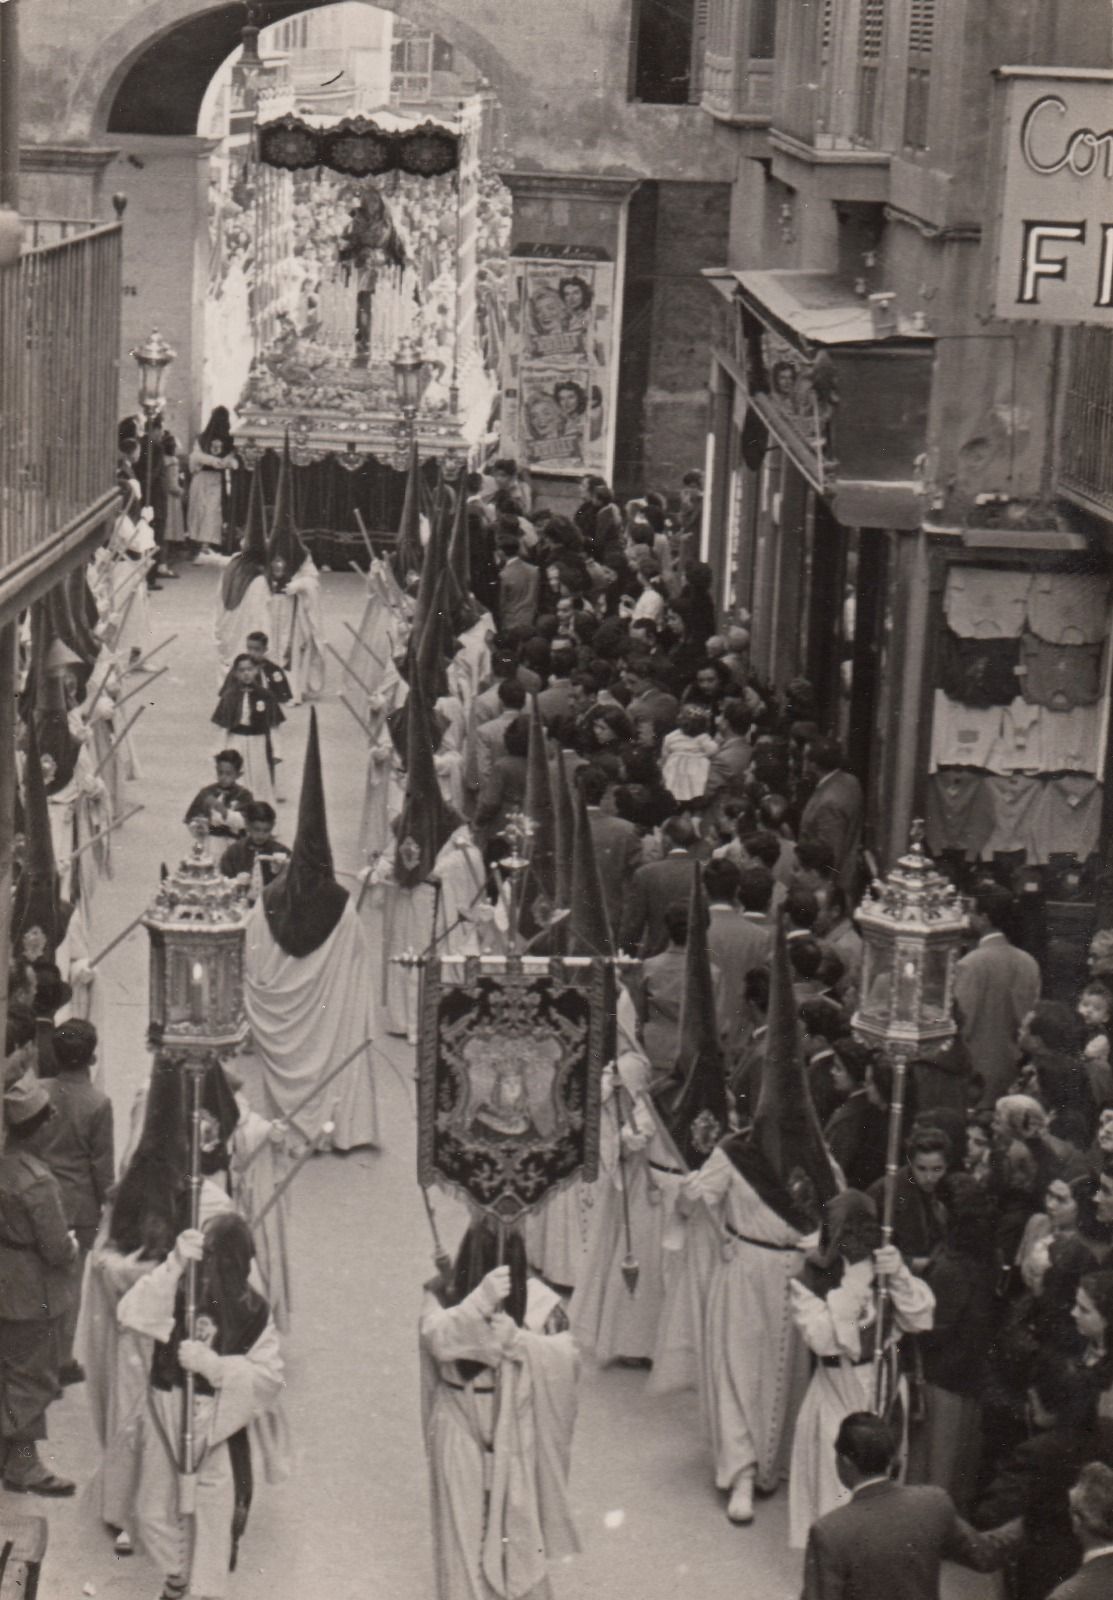 La cofradía procesionando en la calle San Miguel el Jueves Santo de 1955.